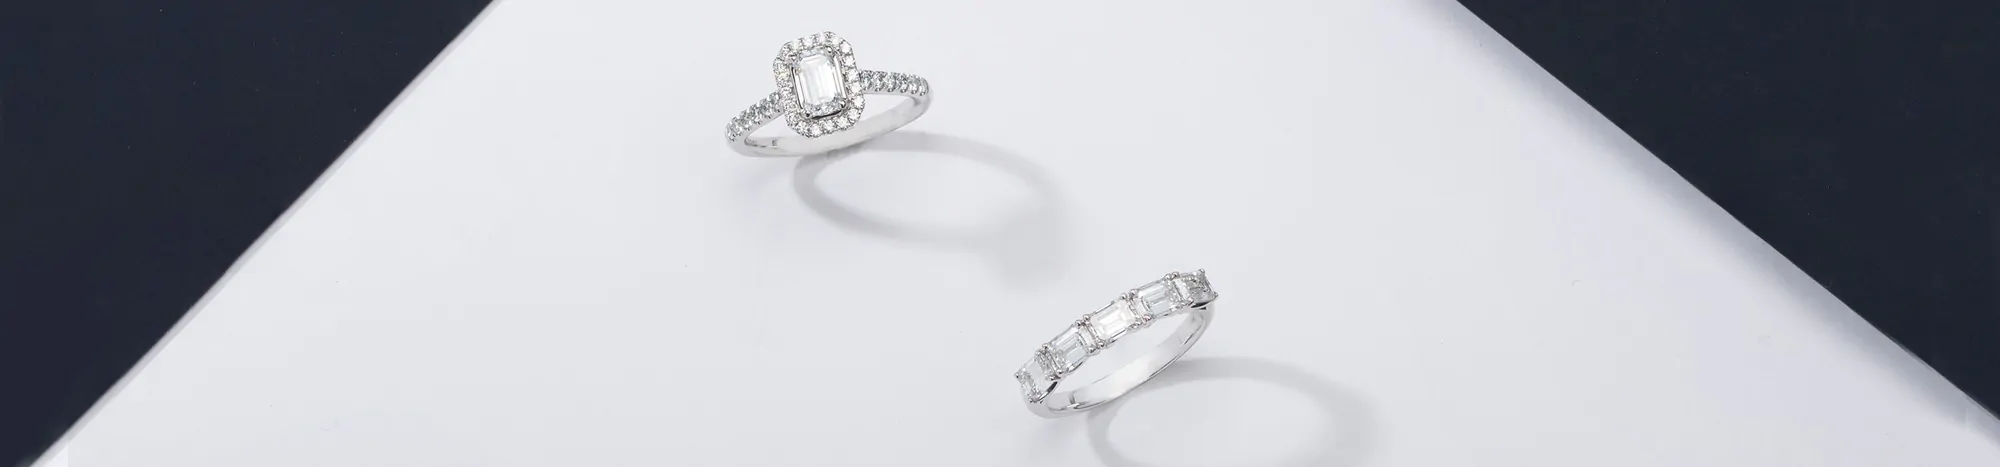 Engagement Rings: Princess vs. Emerald Cut